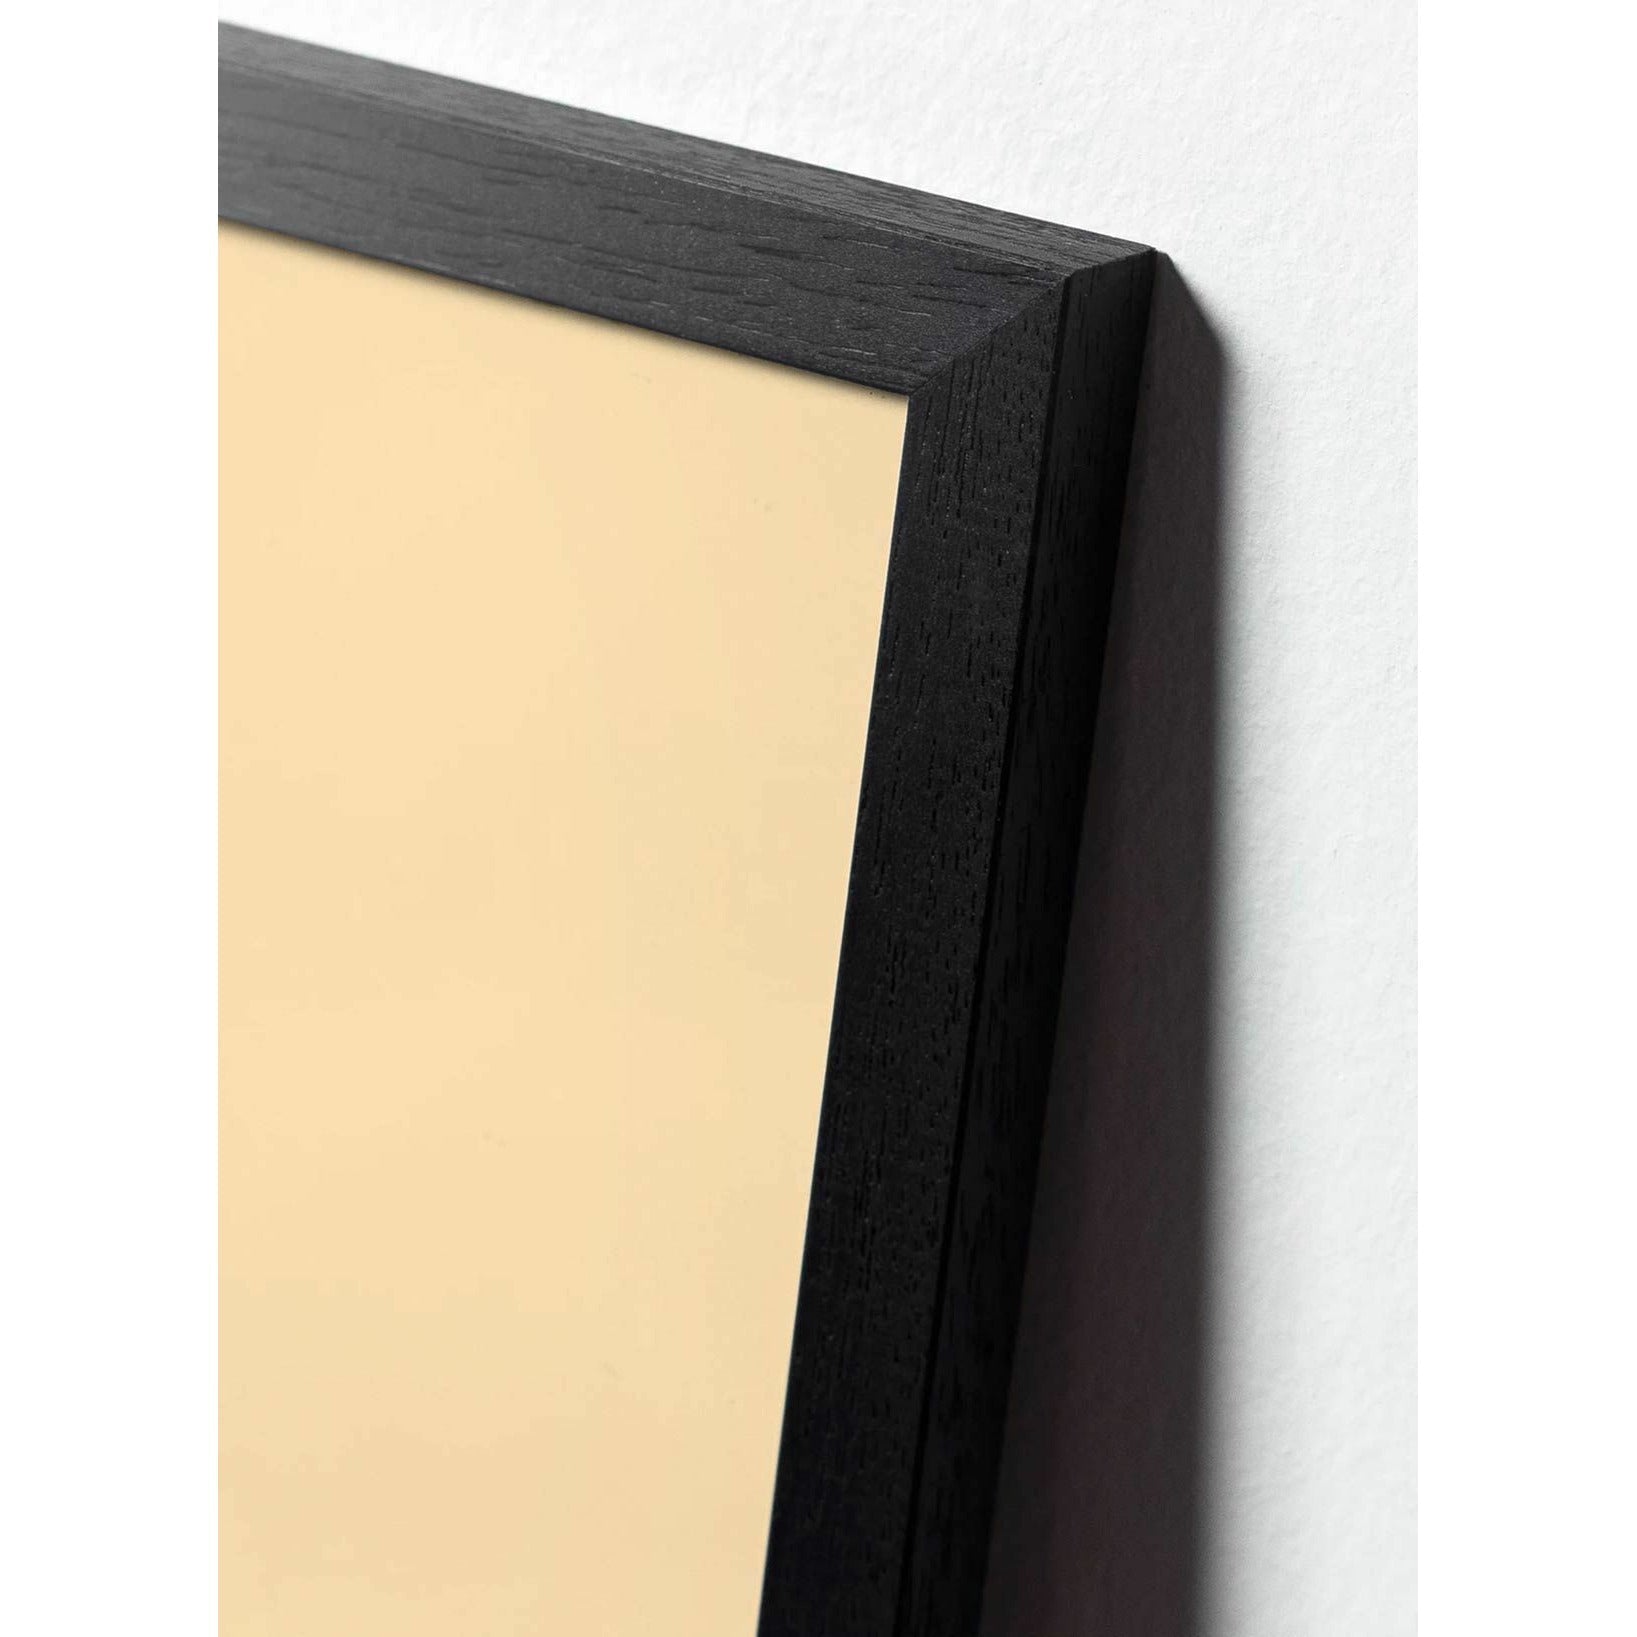 Brainchild kapky klasický plakát, rám v černém lakovaném dřevo A5, pískově barevné pozadí